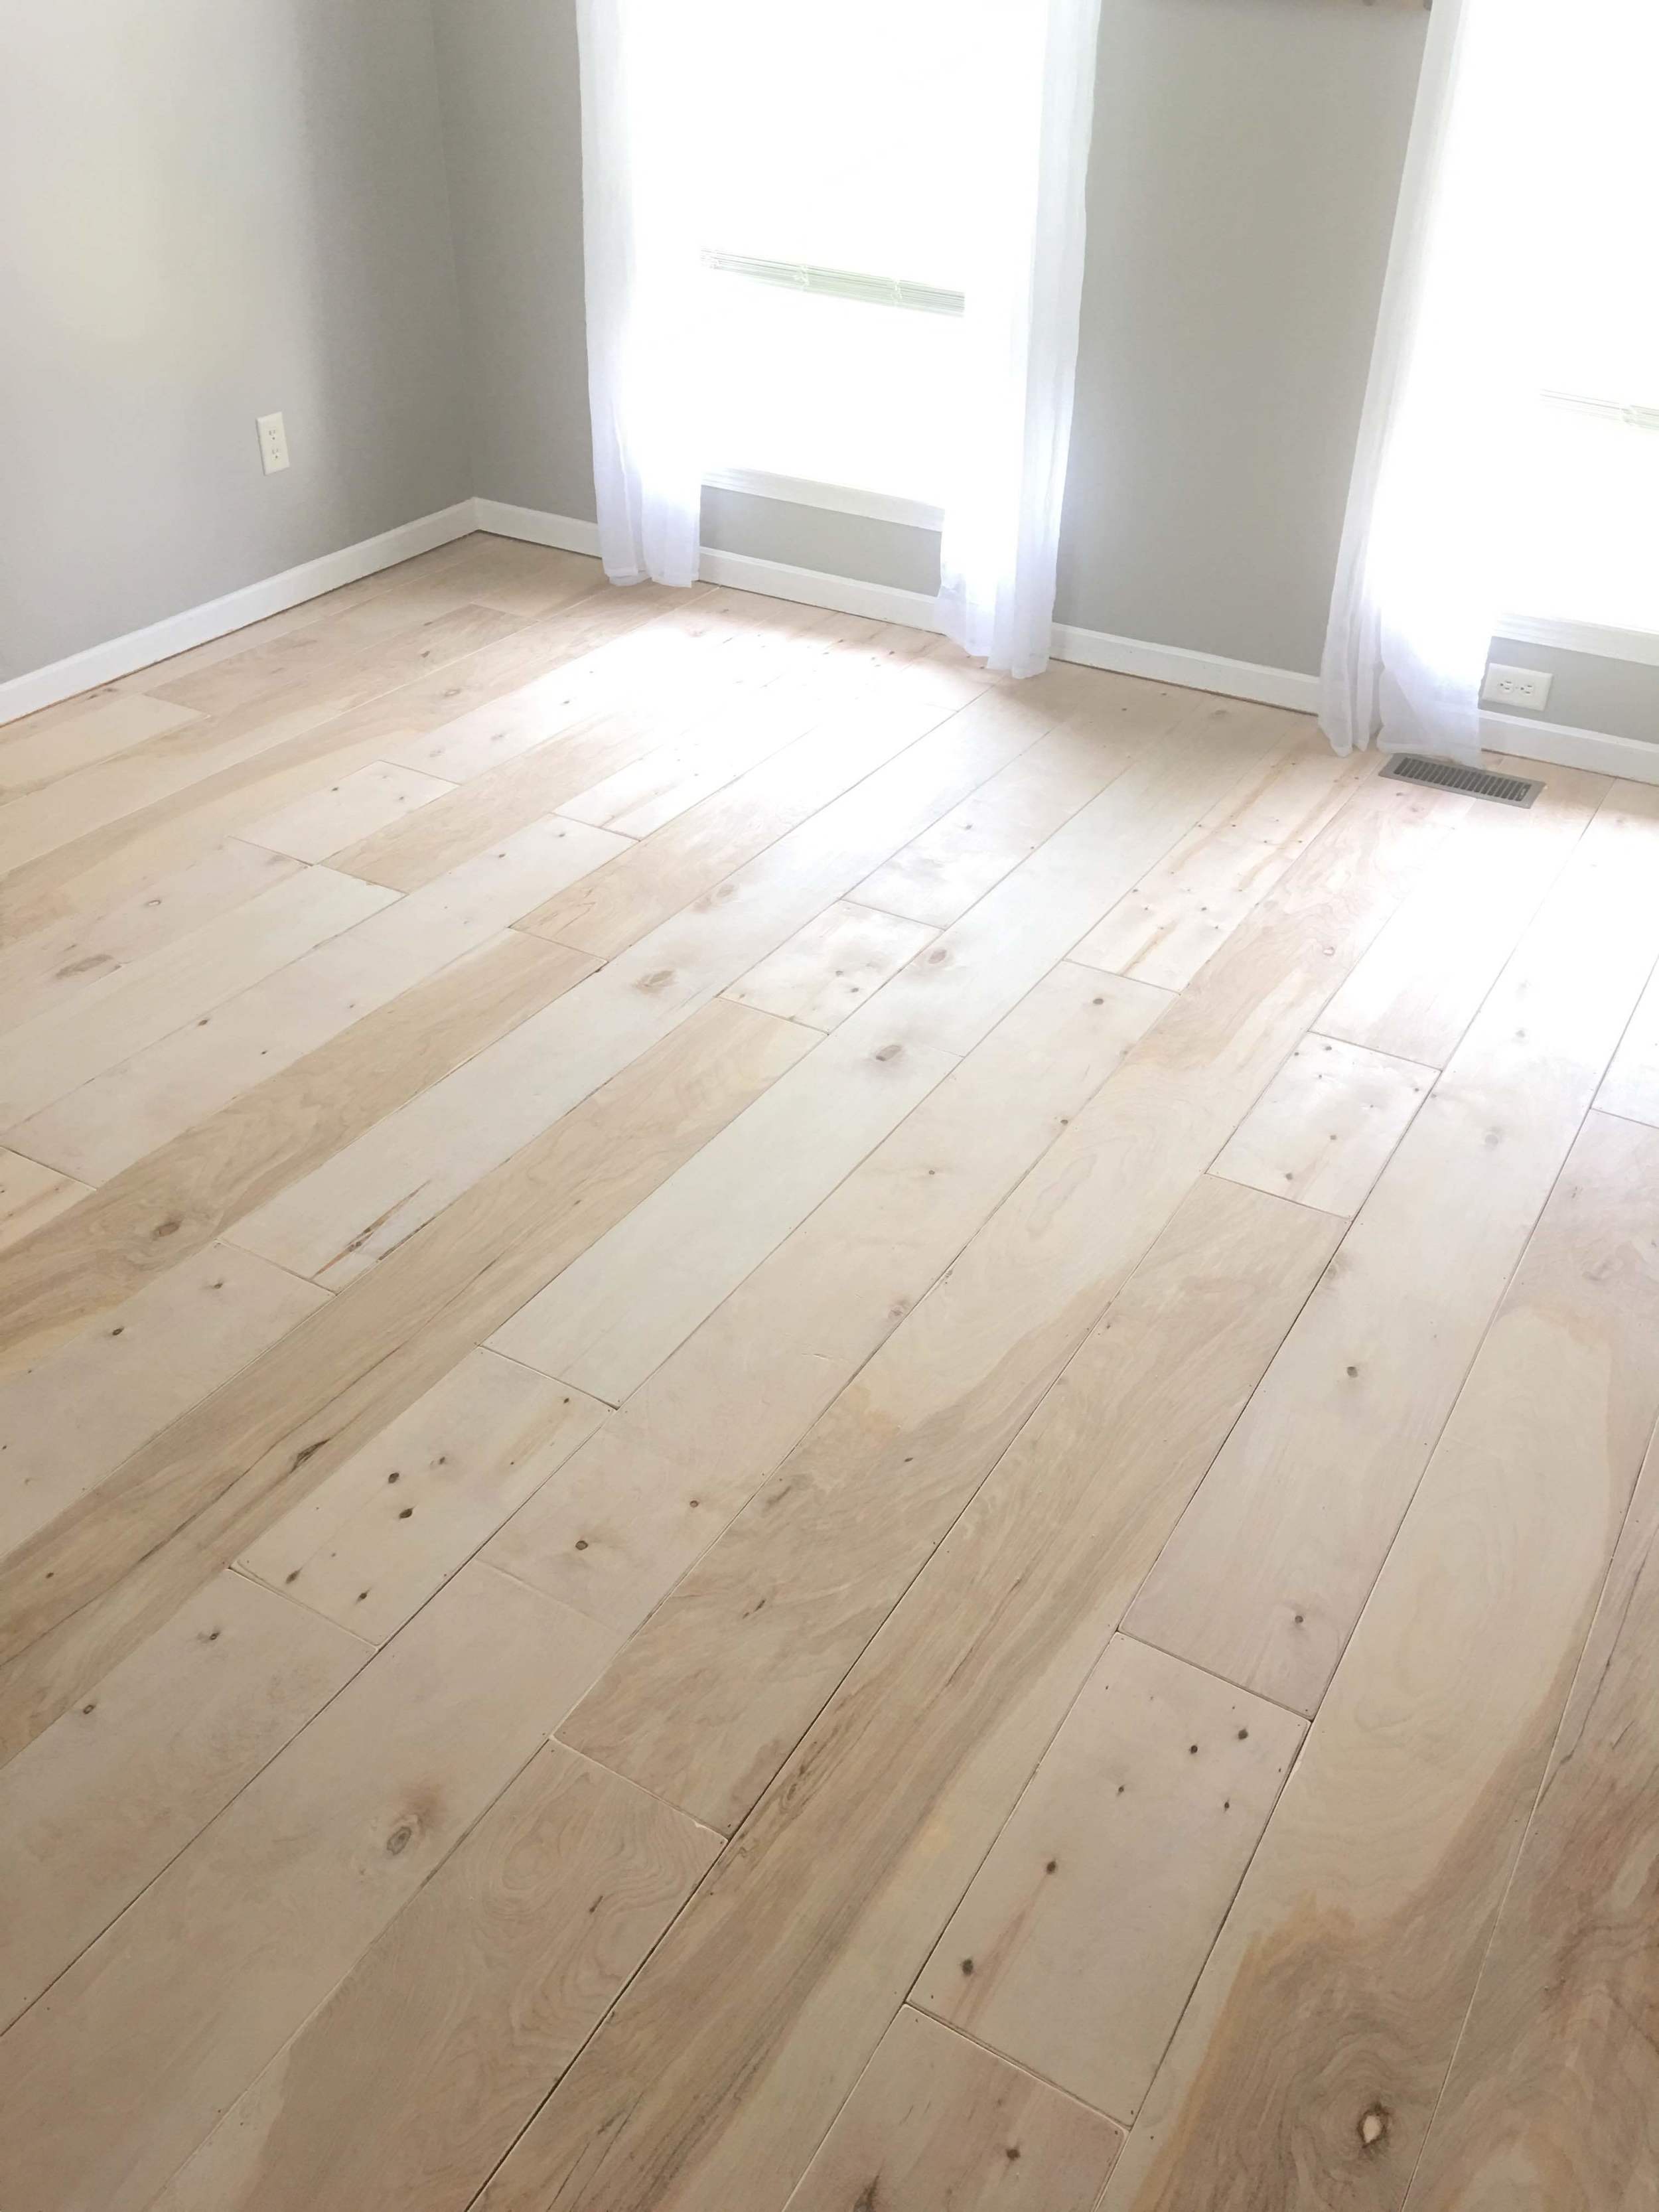 Plywood Turned Hardwood Flooring Diy, How To Make Plywood Floors Look Like Hardwood